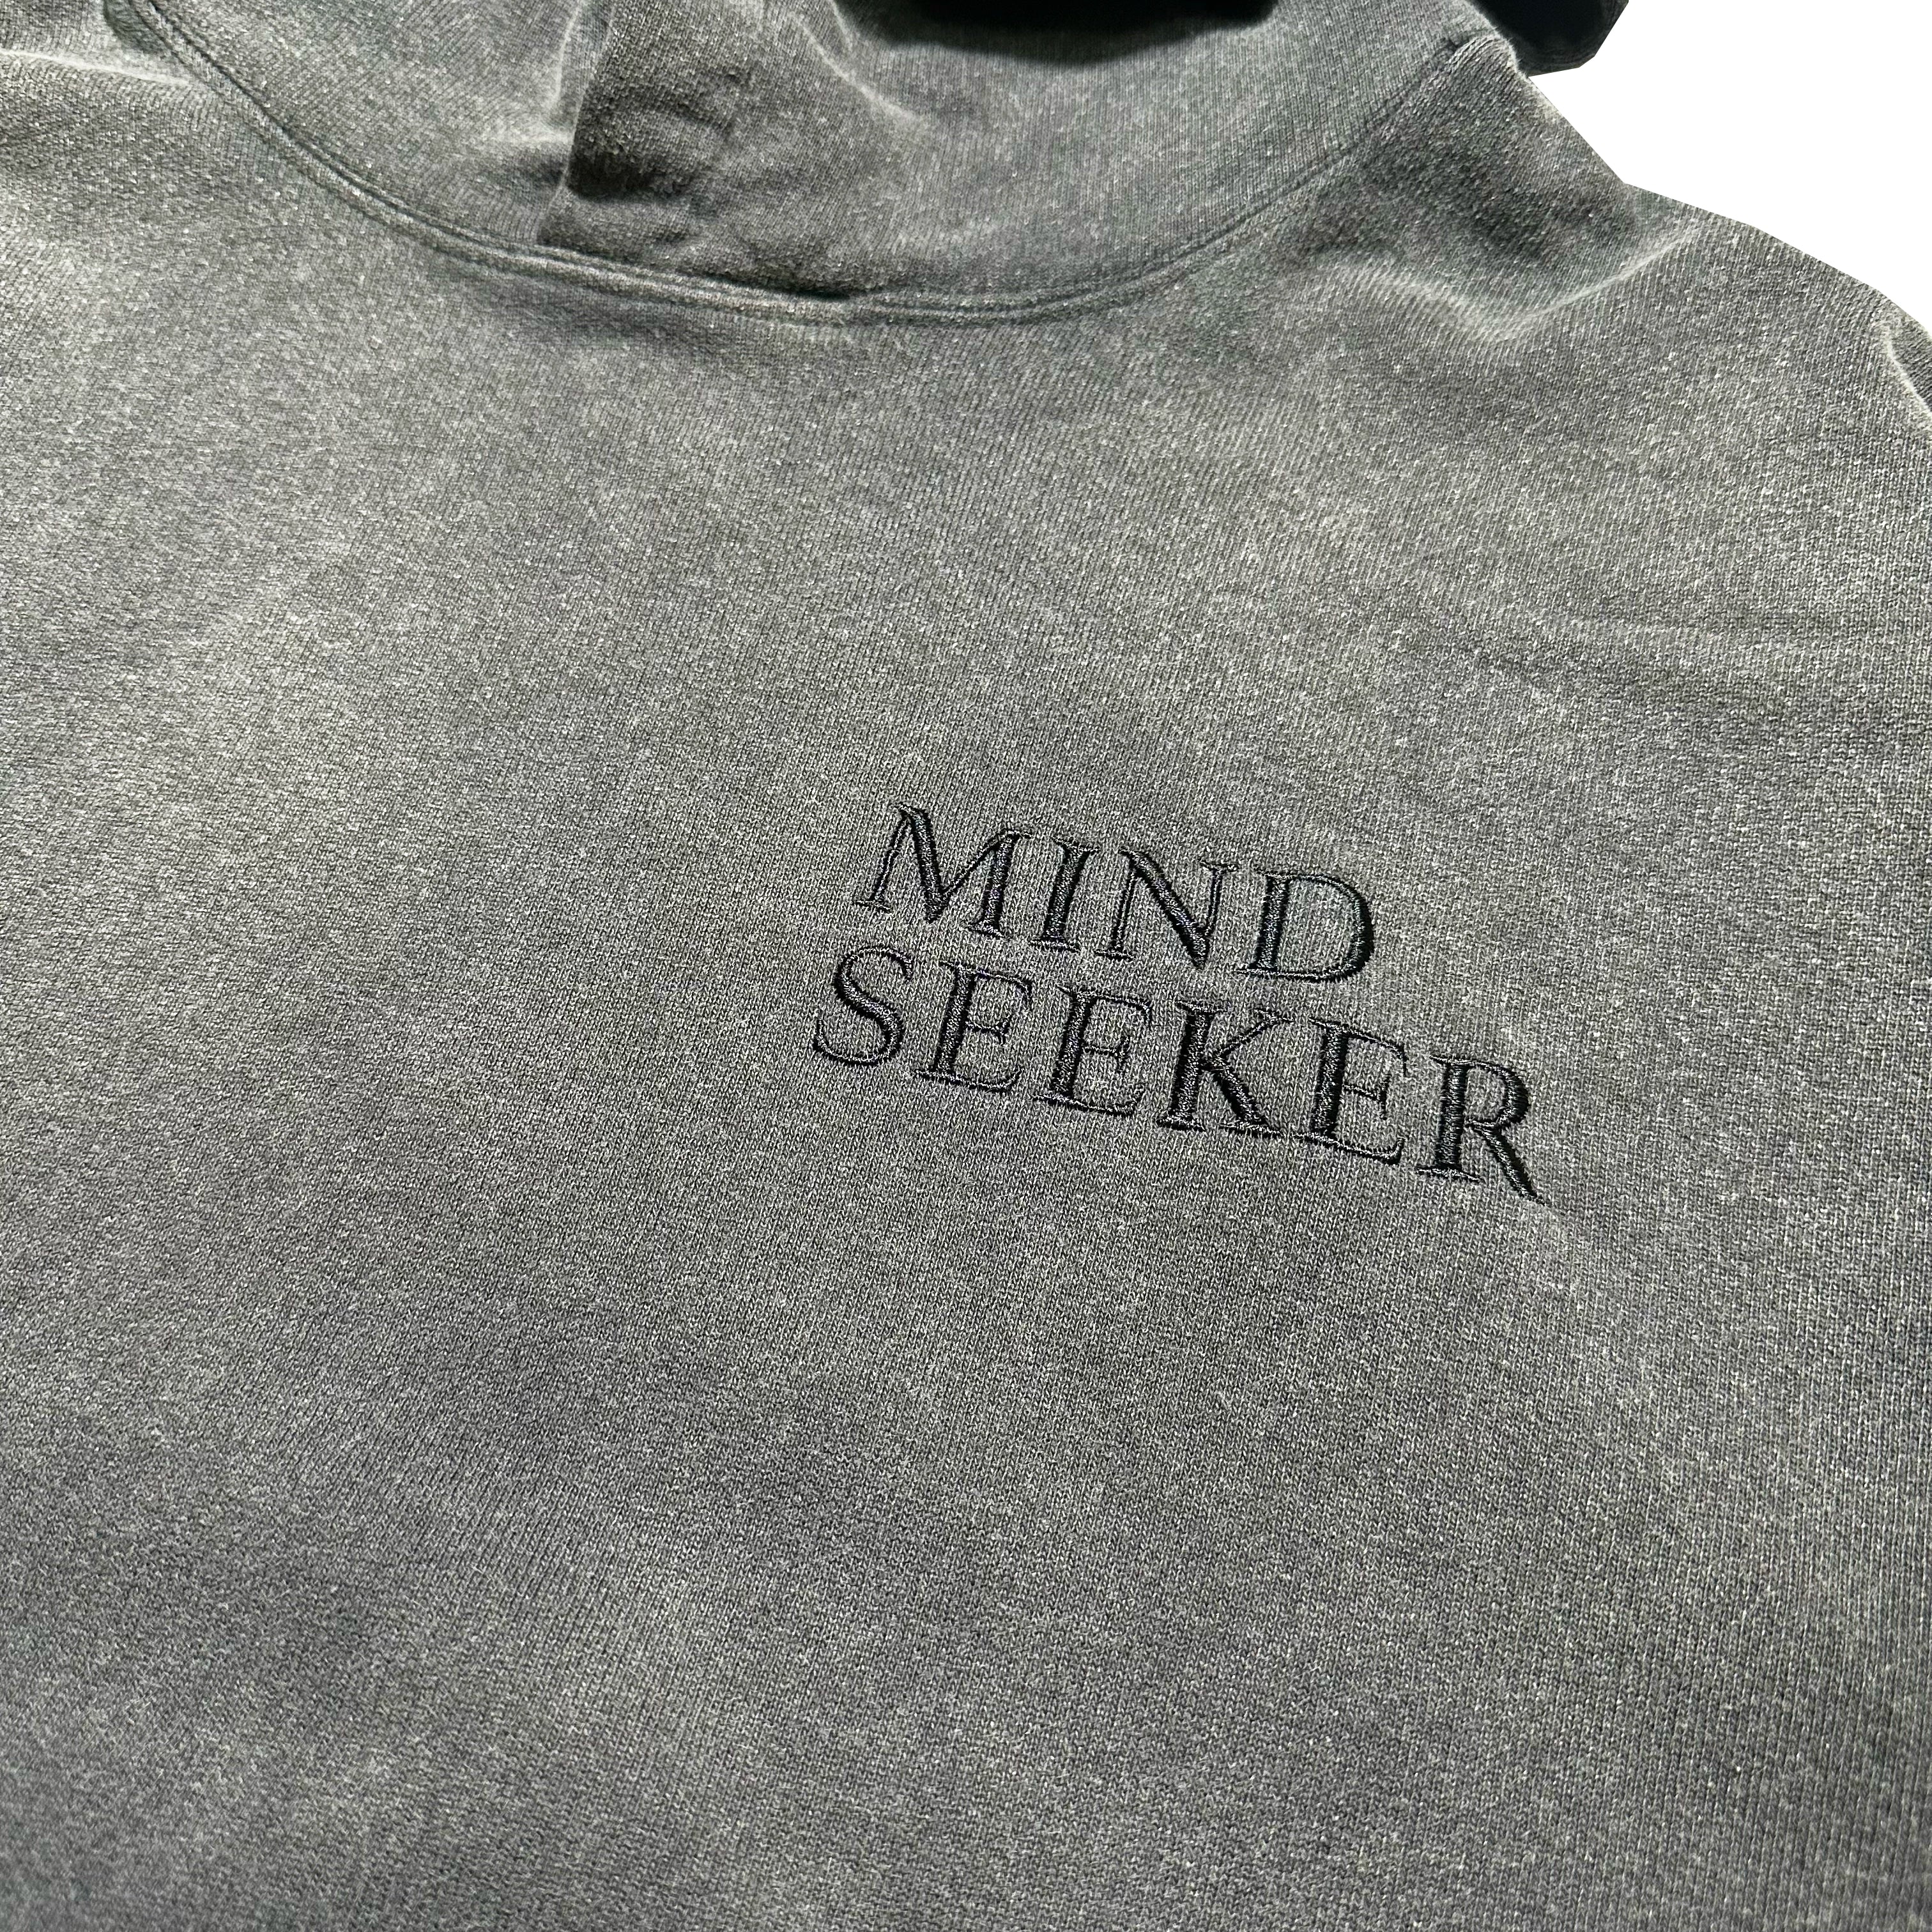 mindseeker / REGGAWS EXCLUSIVE Logo Embroidery Hoodie